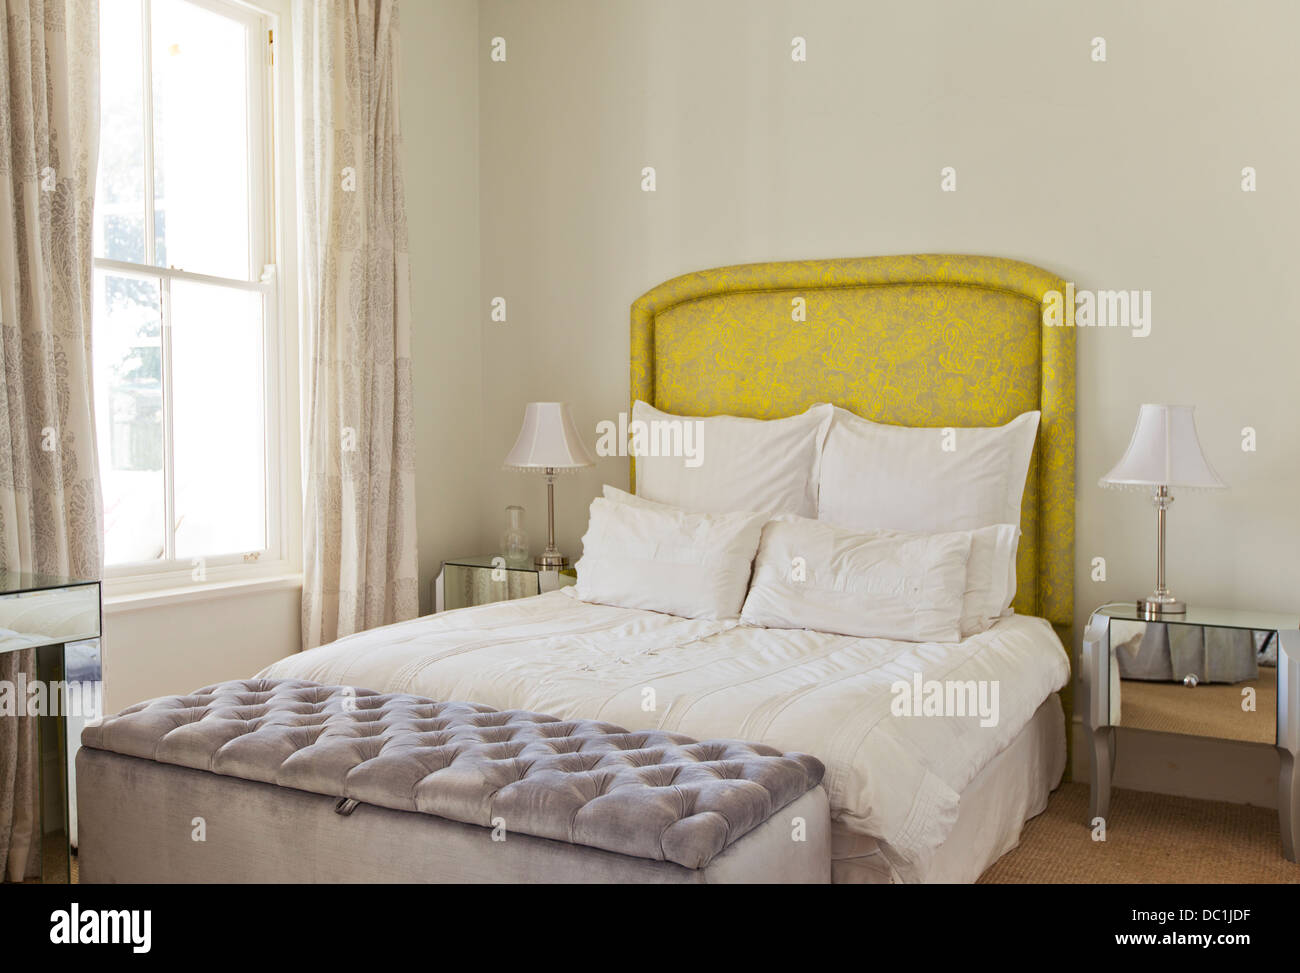 Bed in luxury bedroom Stock Photo